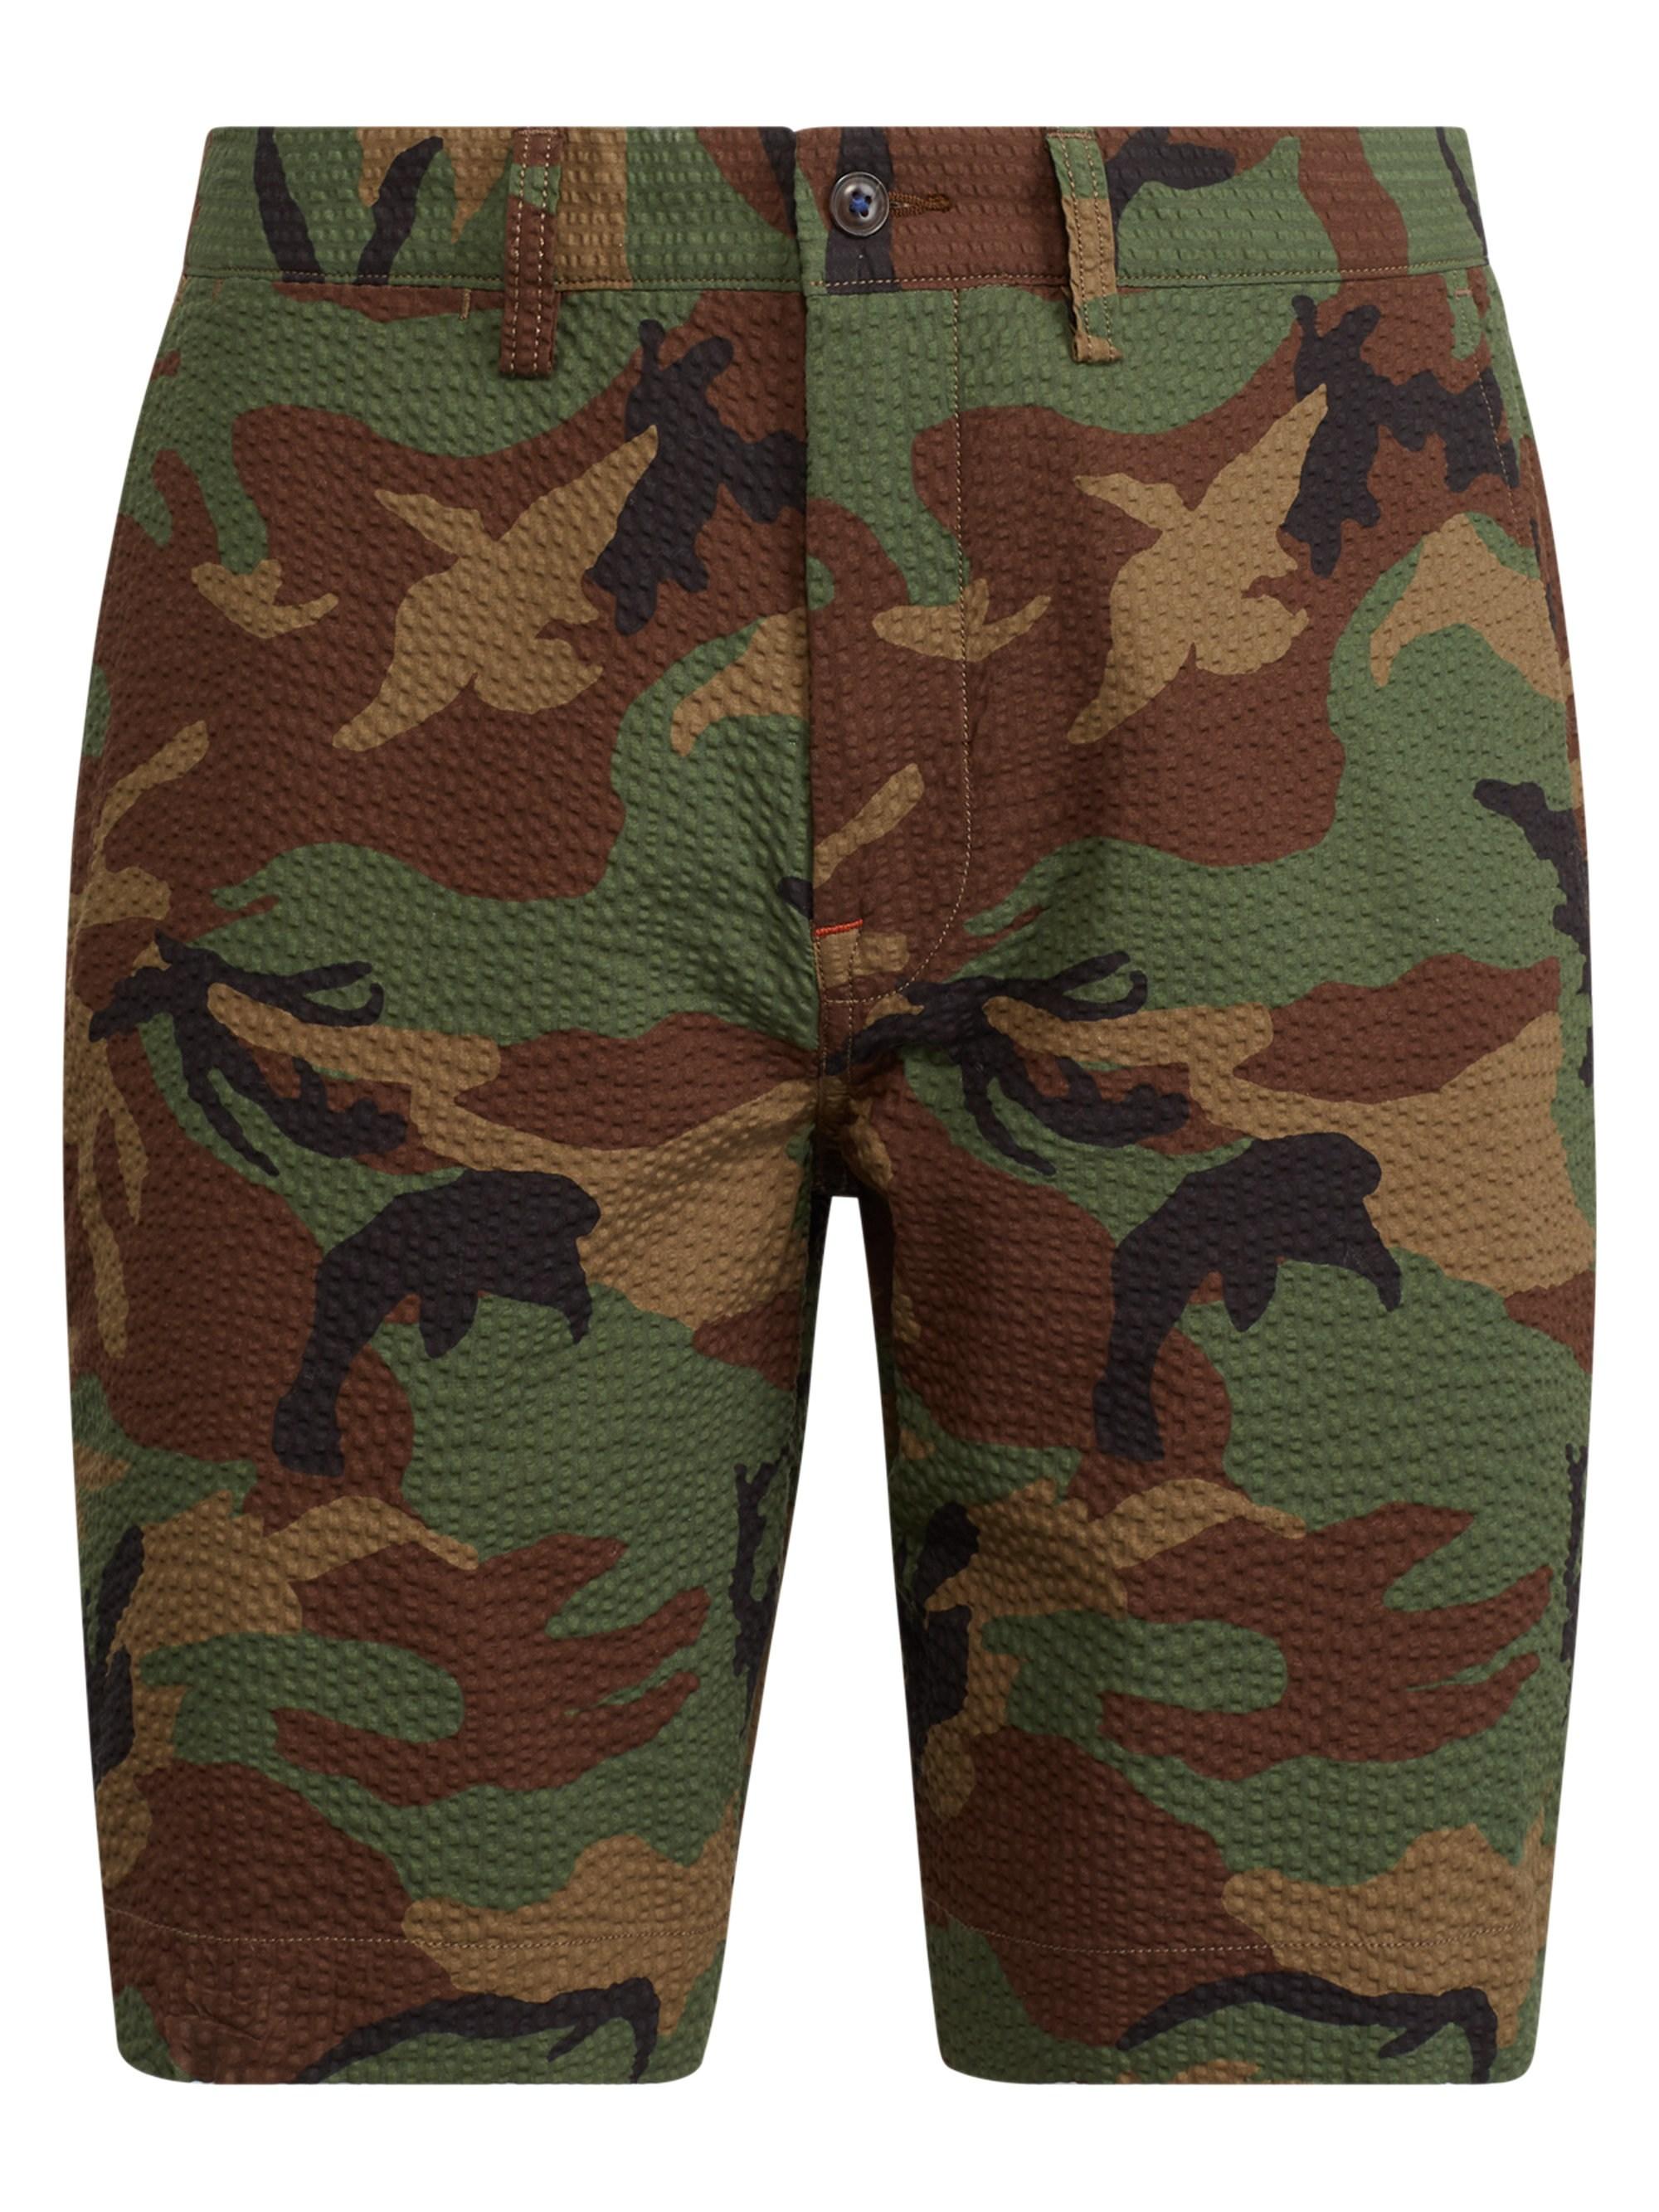 Lyst - Polo Ralph Lauren Men's Seersucker Camouflage Flat Shorts - Camo ...